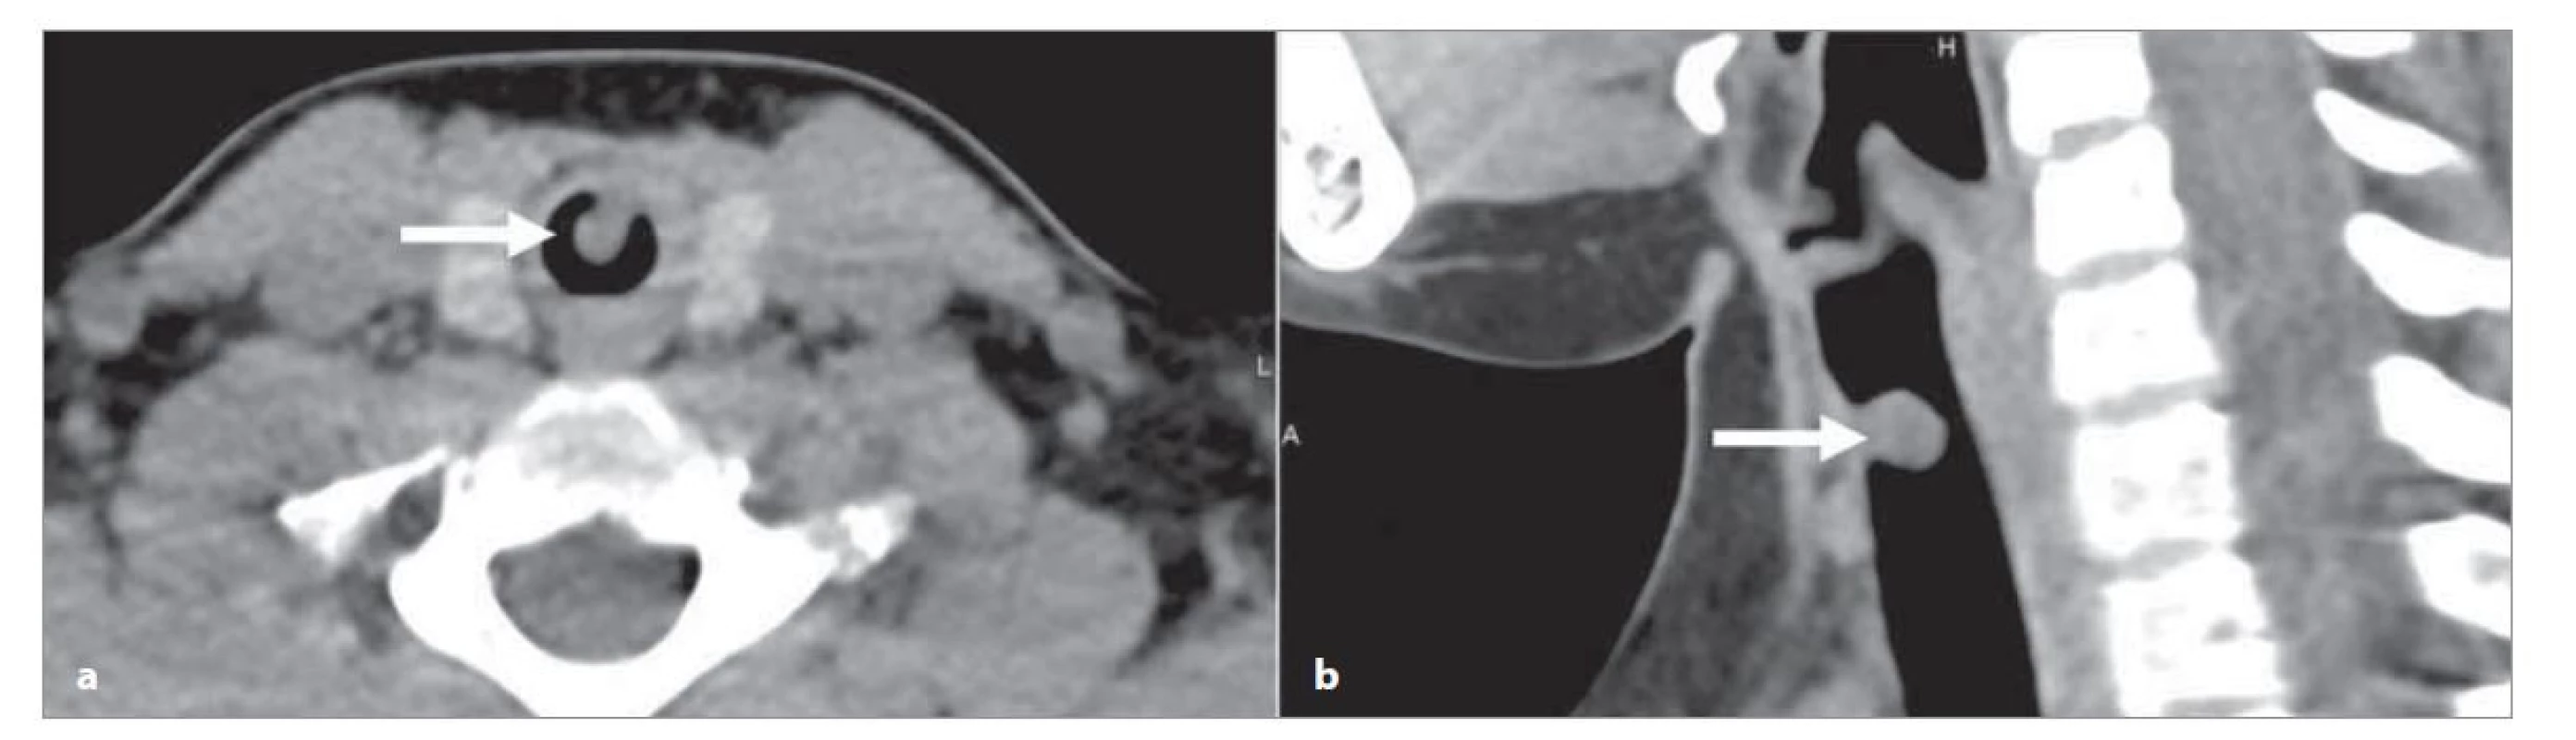 CT krku a hrudníku – polypózní útvar na ventrální stěně průdušnice (šipka).<br>
a) axiální rovina, b) sagitální rovina.<br>
Fig. 1. CT of the neck and chest – polyp on the ventral wall of the trachea (arrow).<br>
a) axial plane, b) sagittal plane.